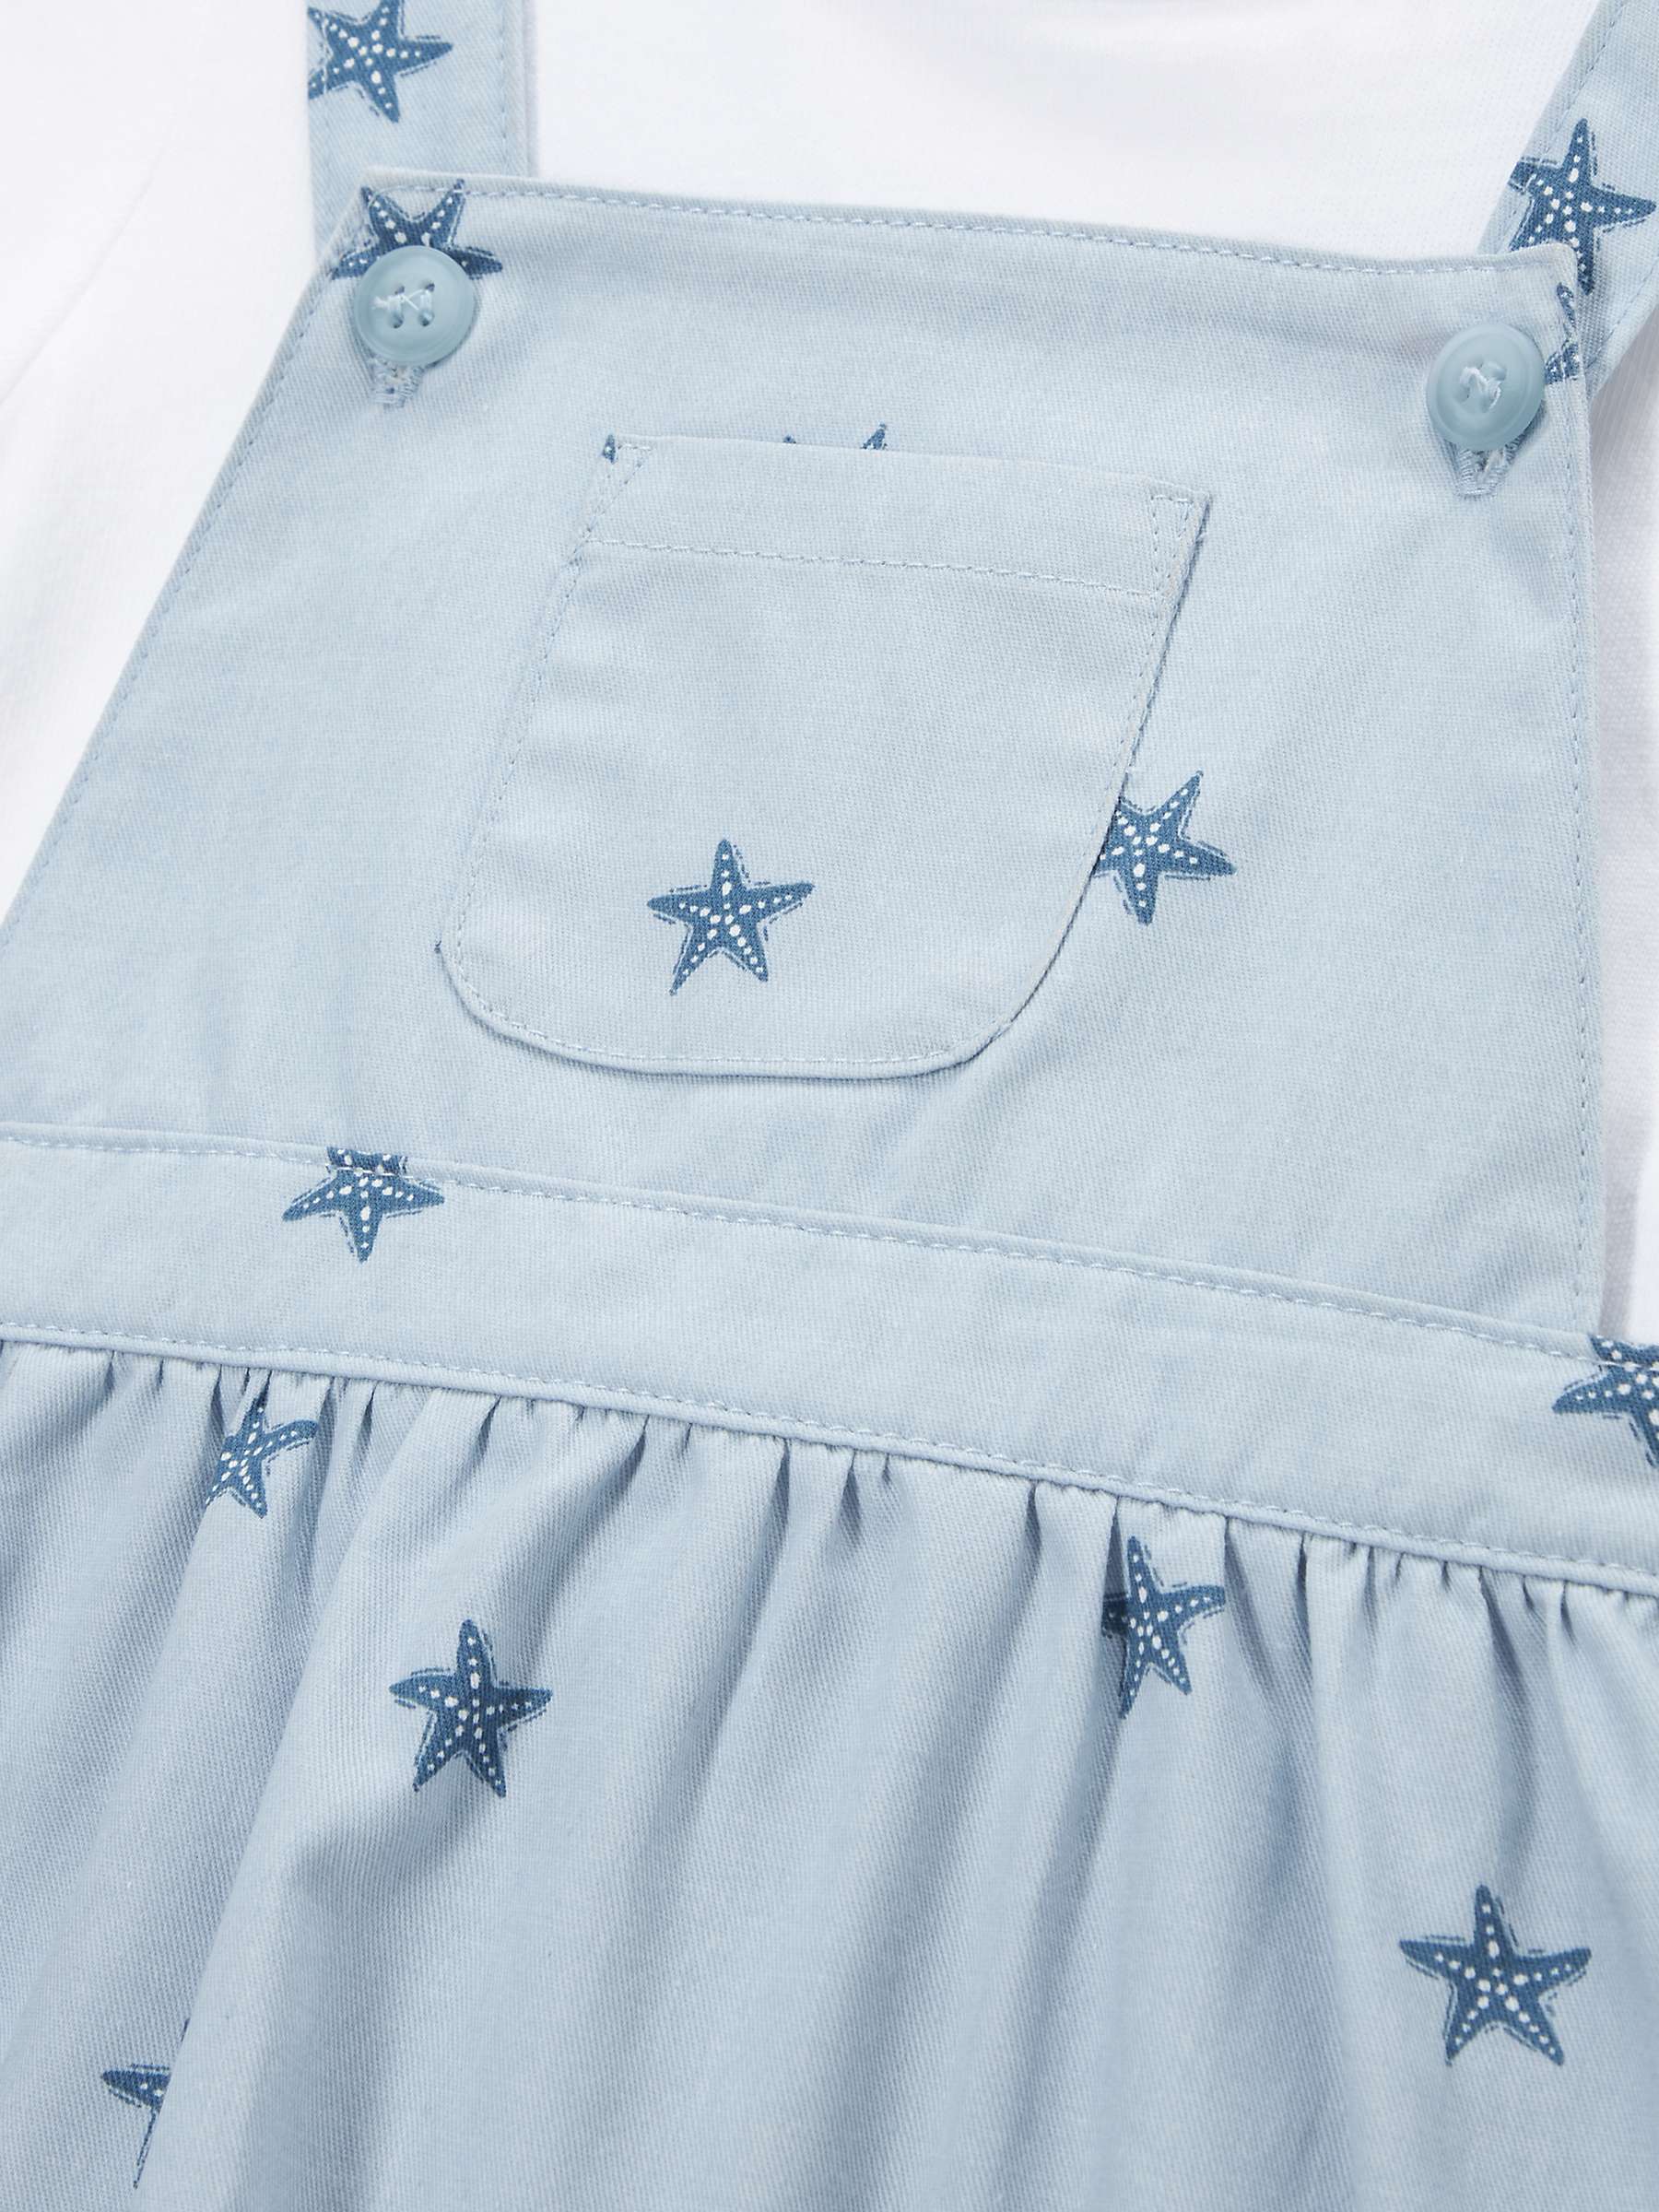 Buy John Lewis Baby Star Print Pinafore & T-Shirt Set, Blue/White Online at johnlewis.com